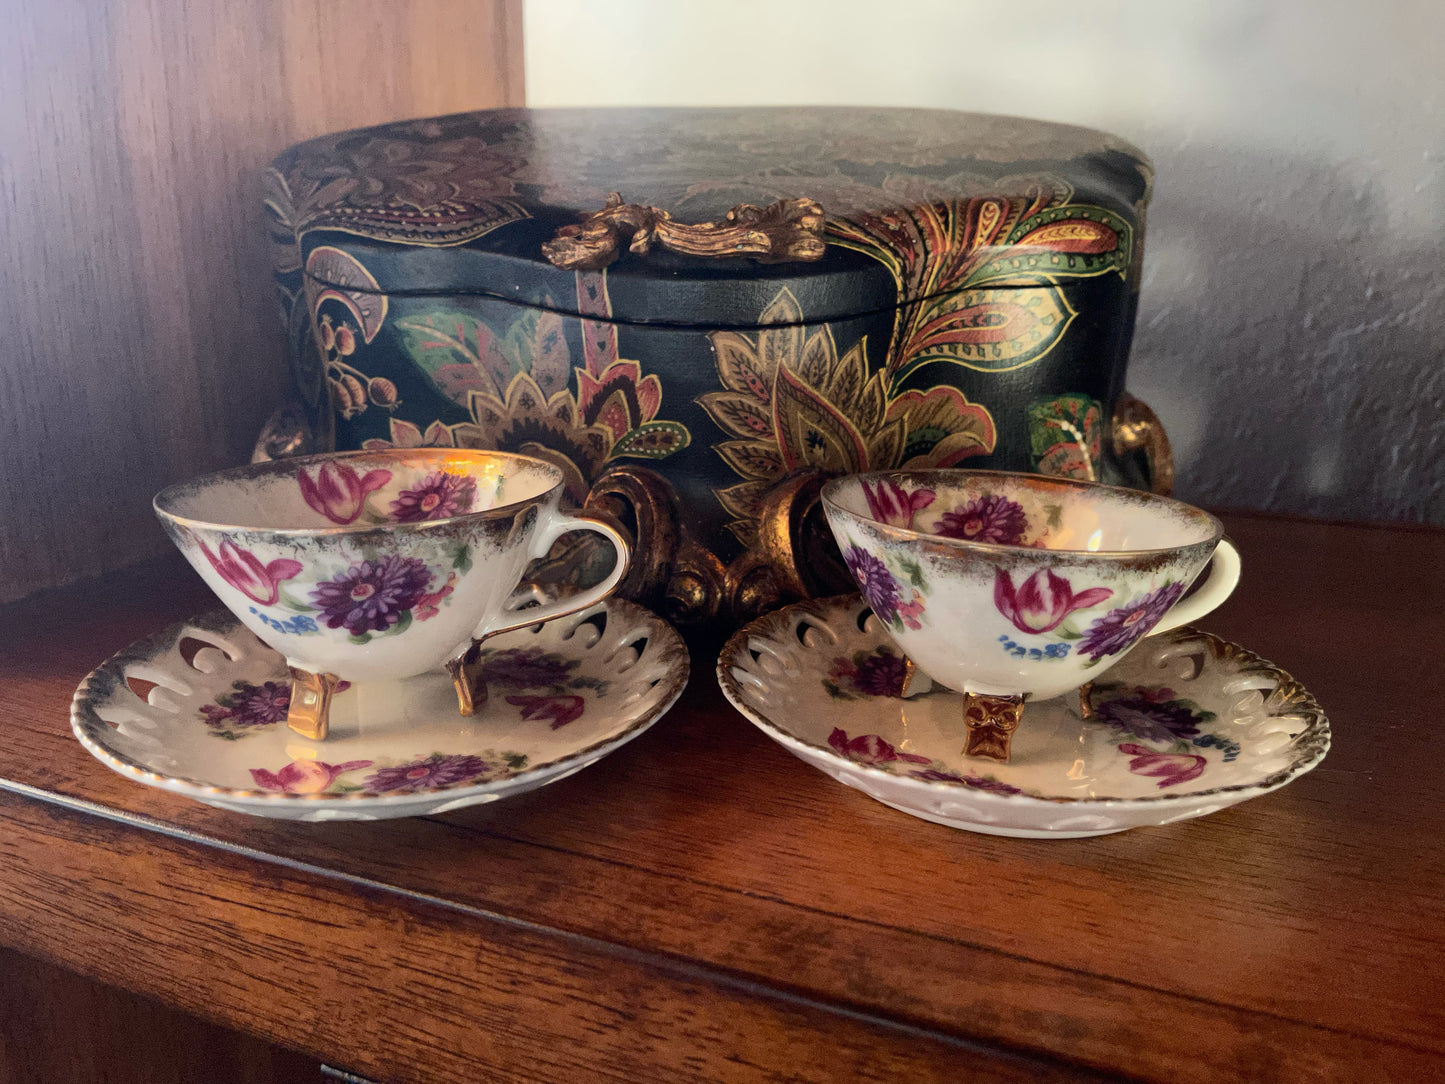 Lustre Vintage Tea Cup and Saucer, Old World Vintage